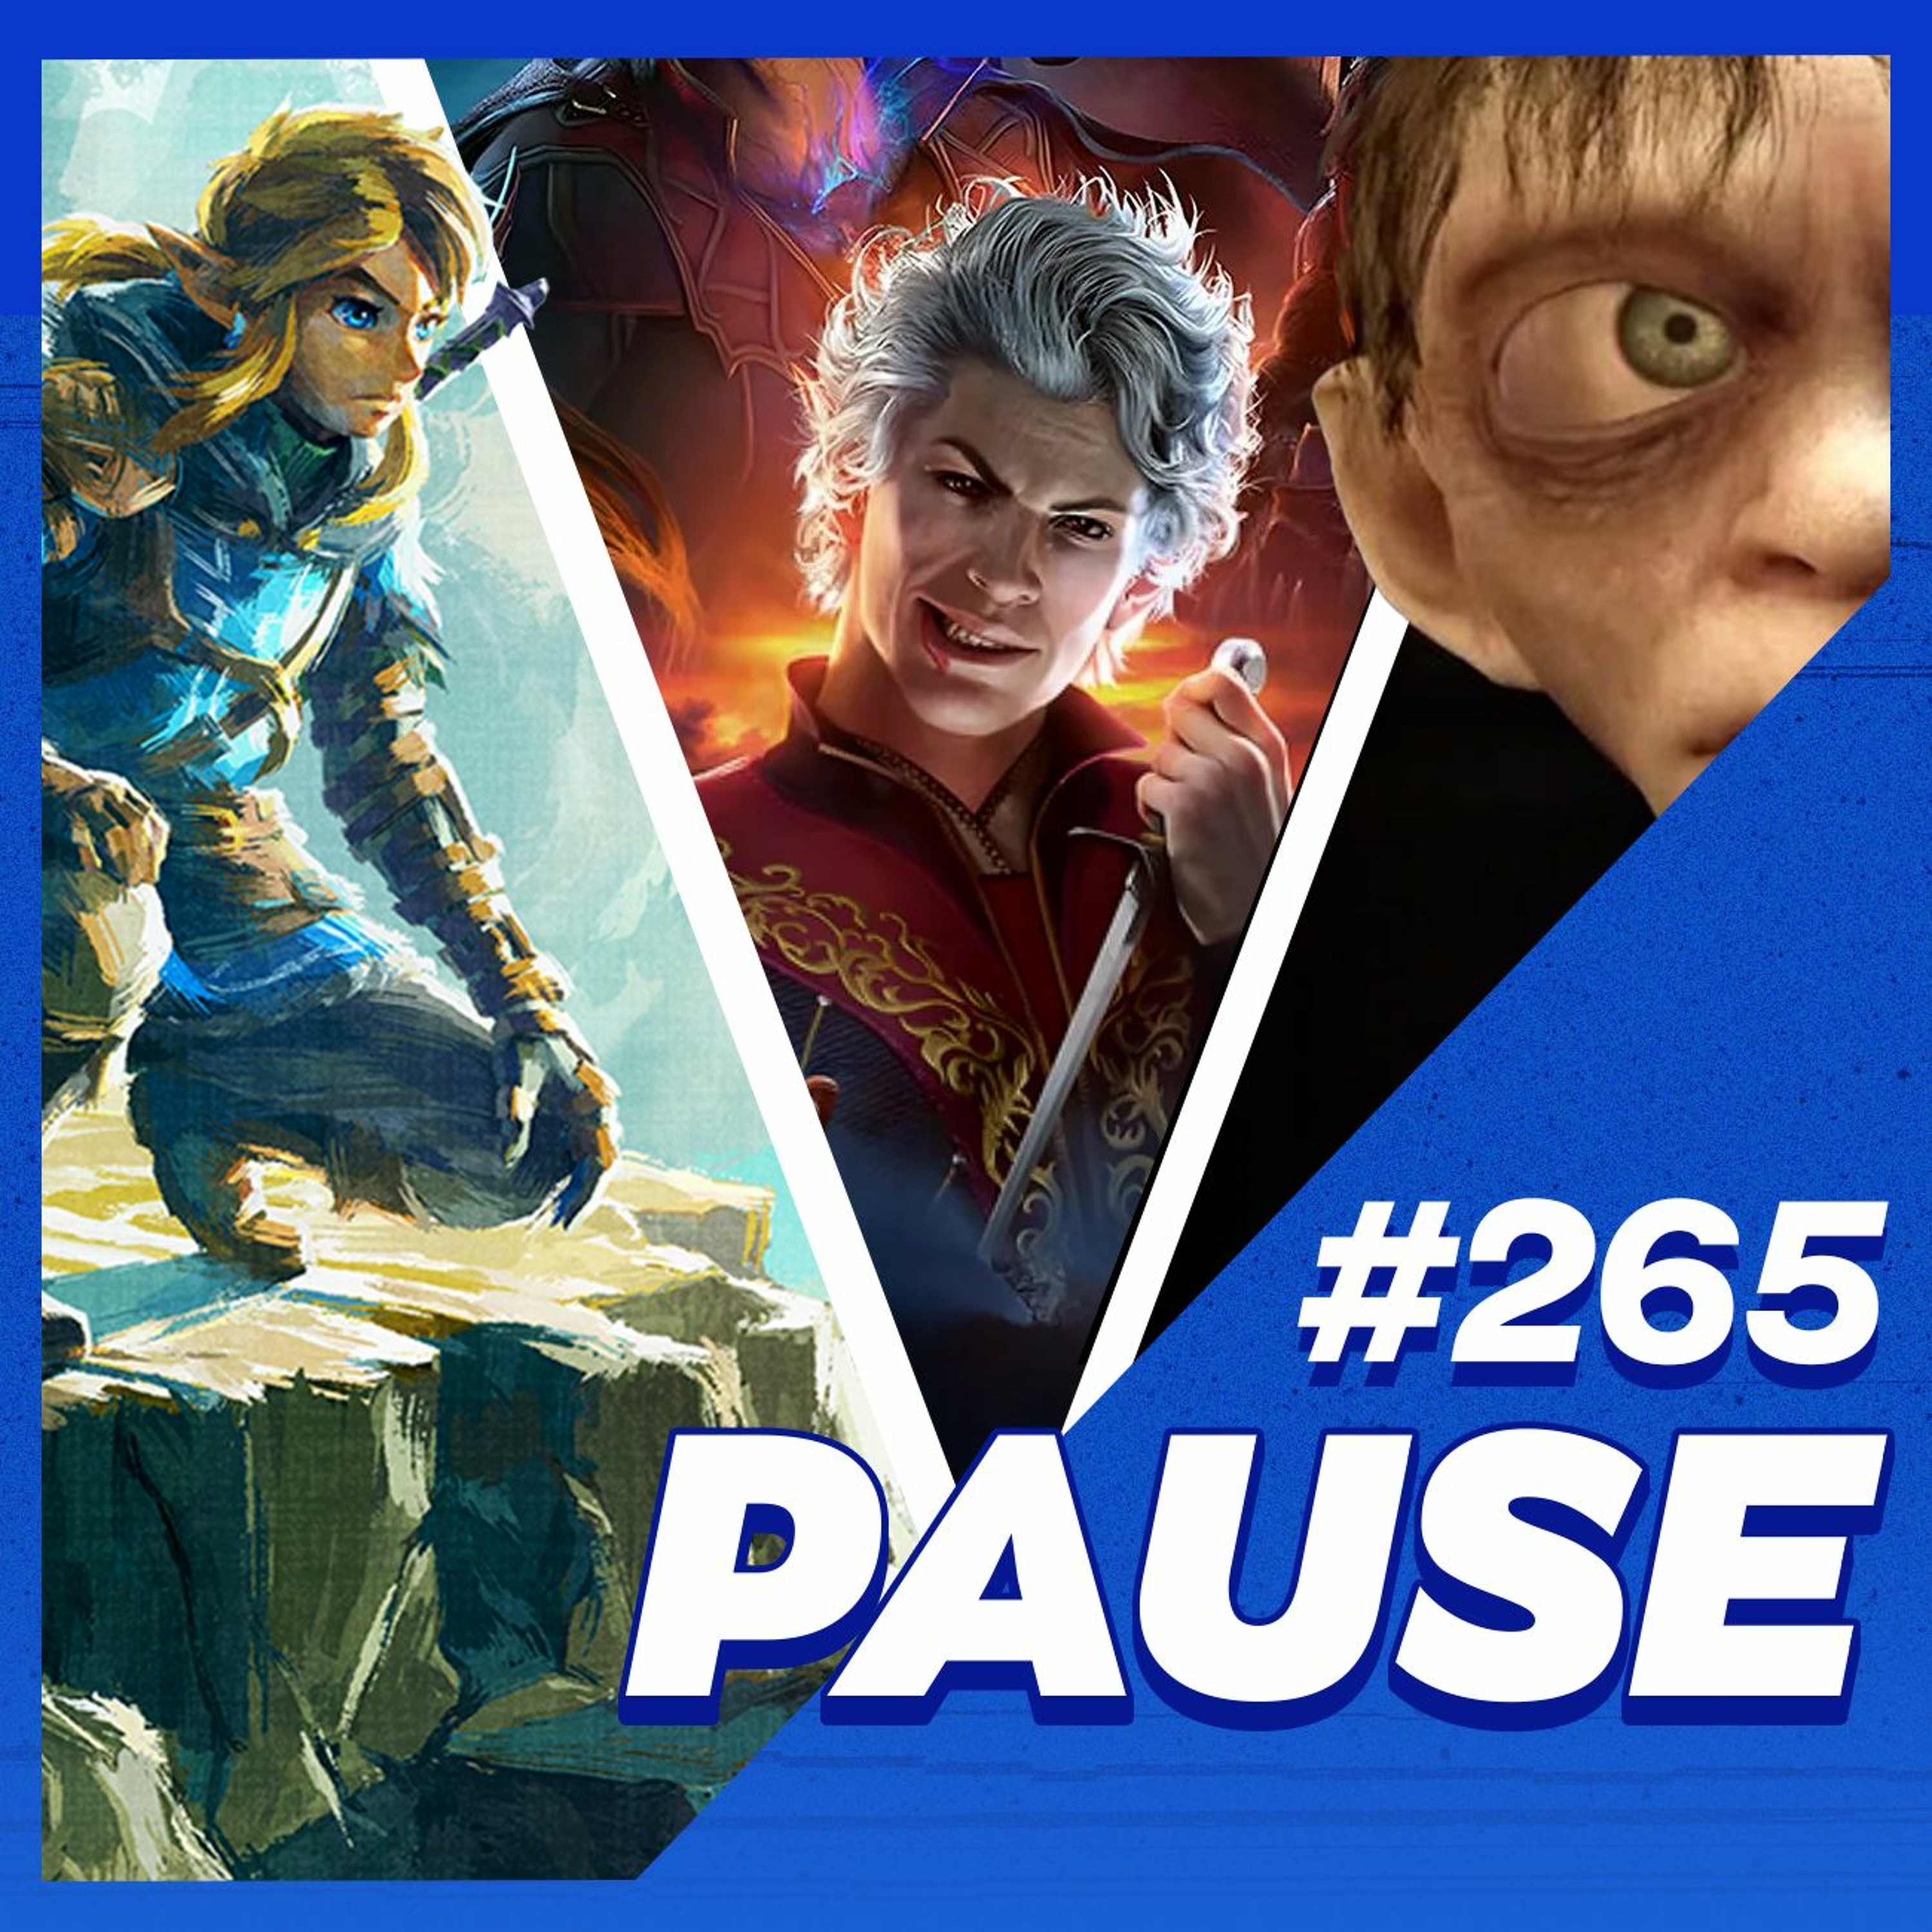 Pause 265 - Pause Game Awards